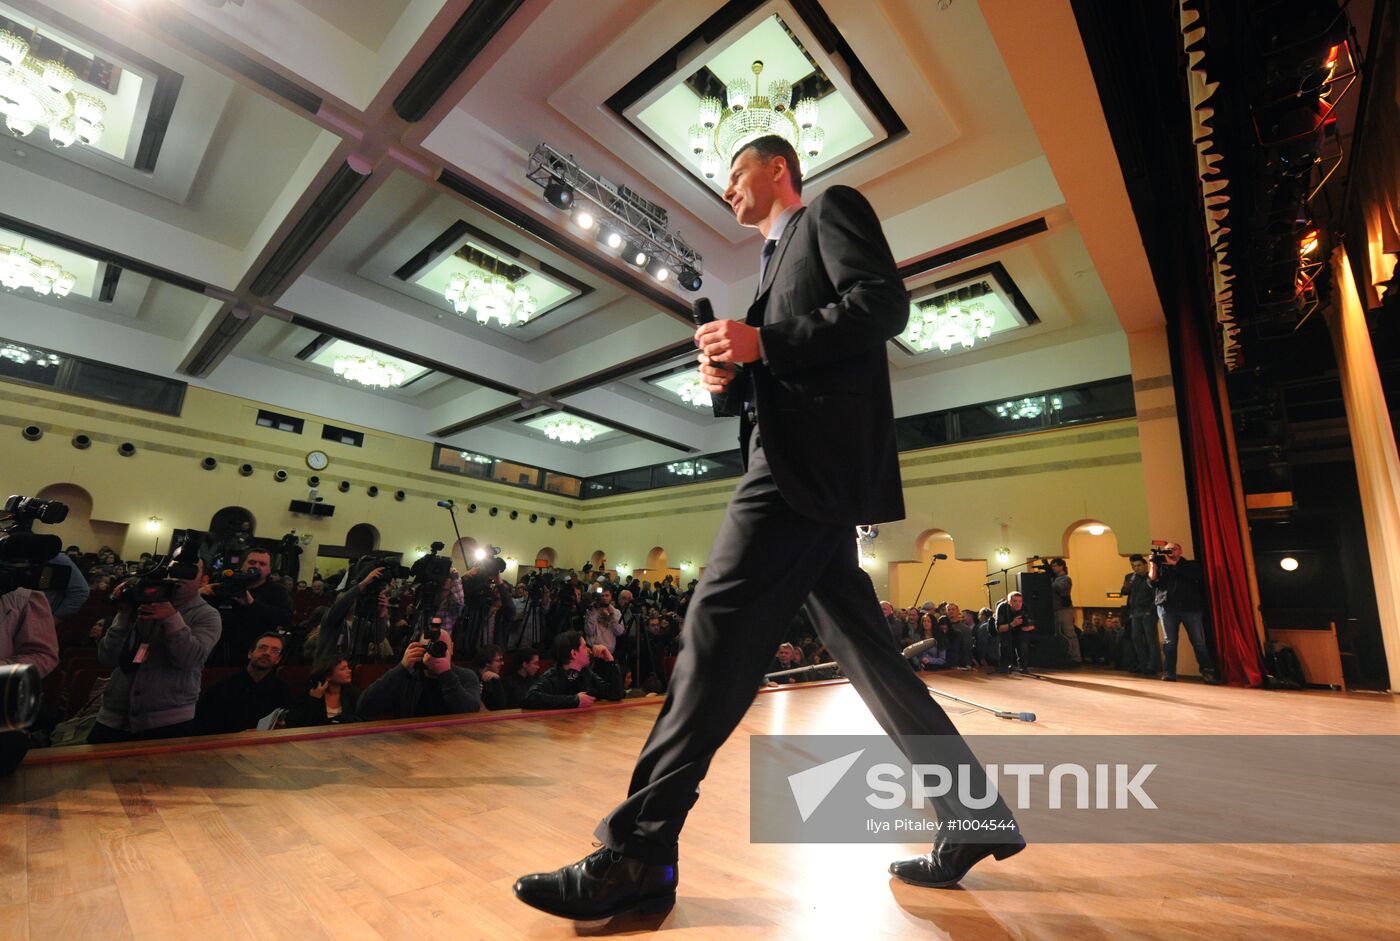 Nomination of Mikhail Prokhorov for Presidency